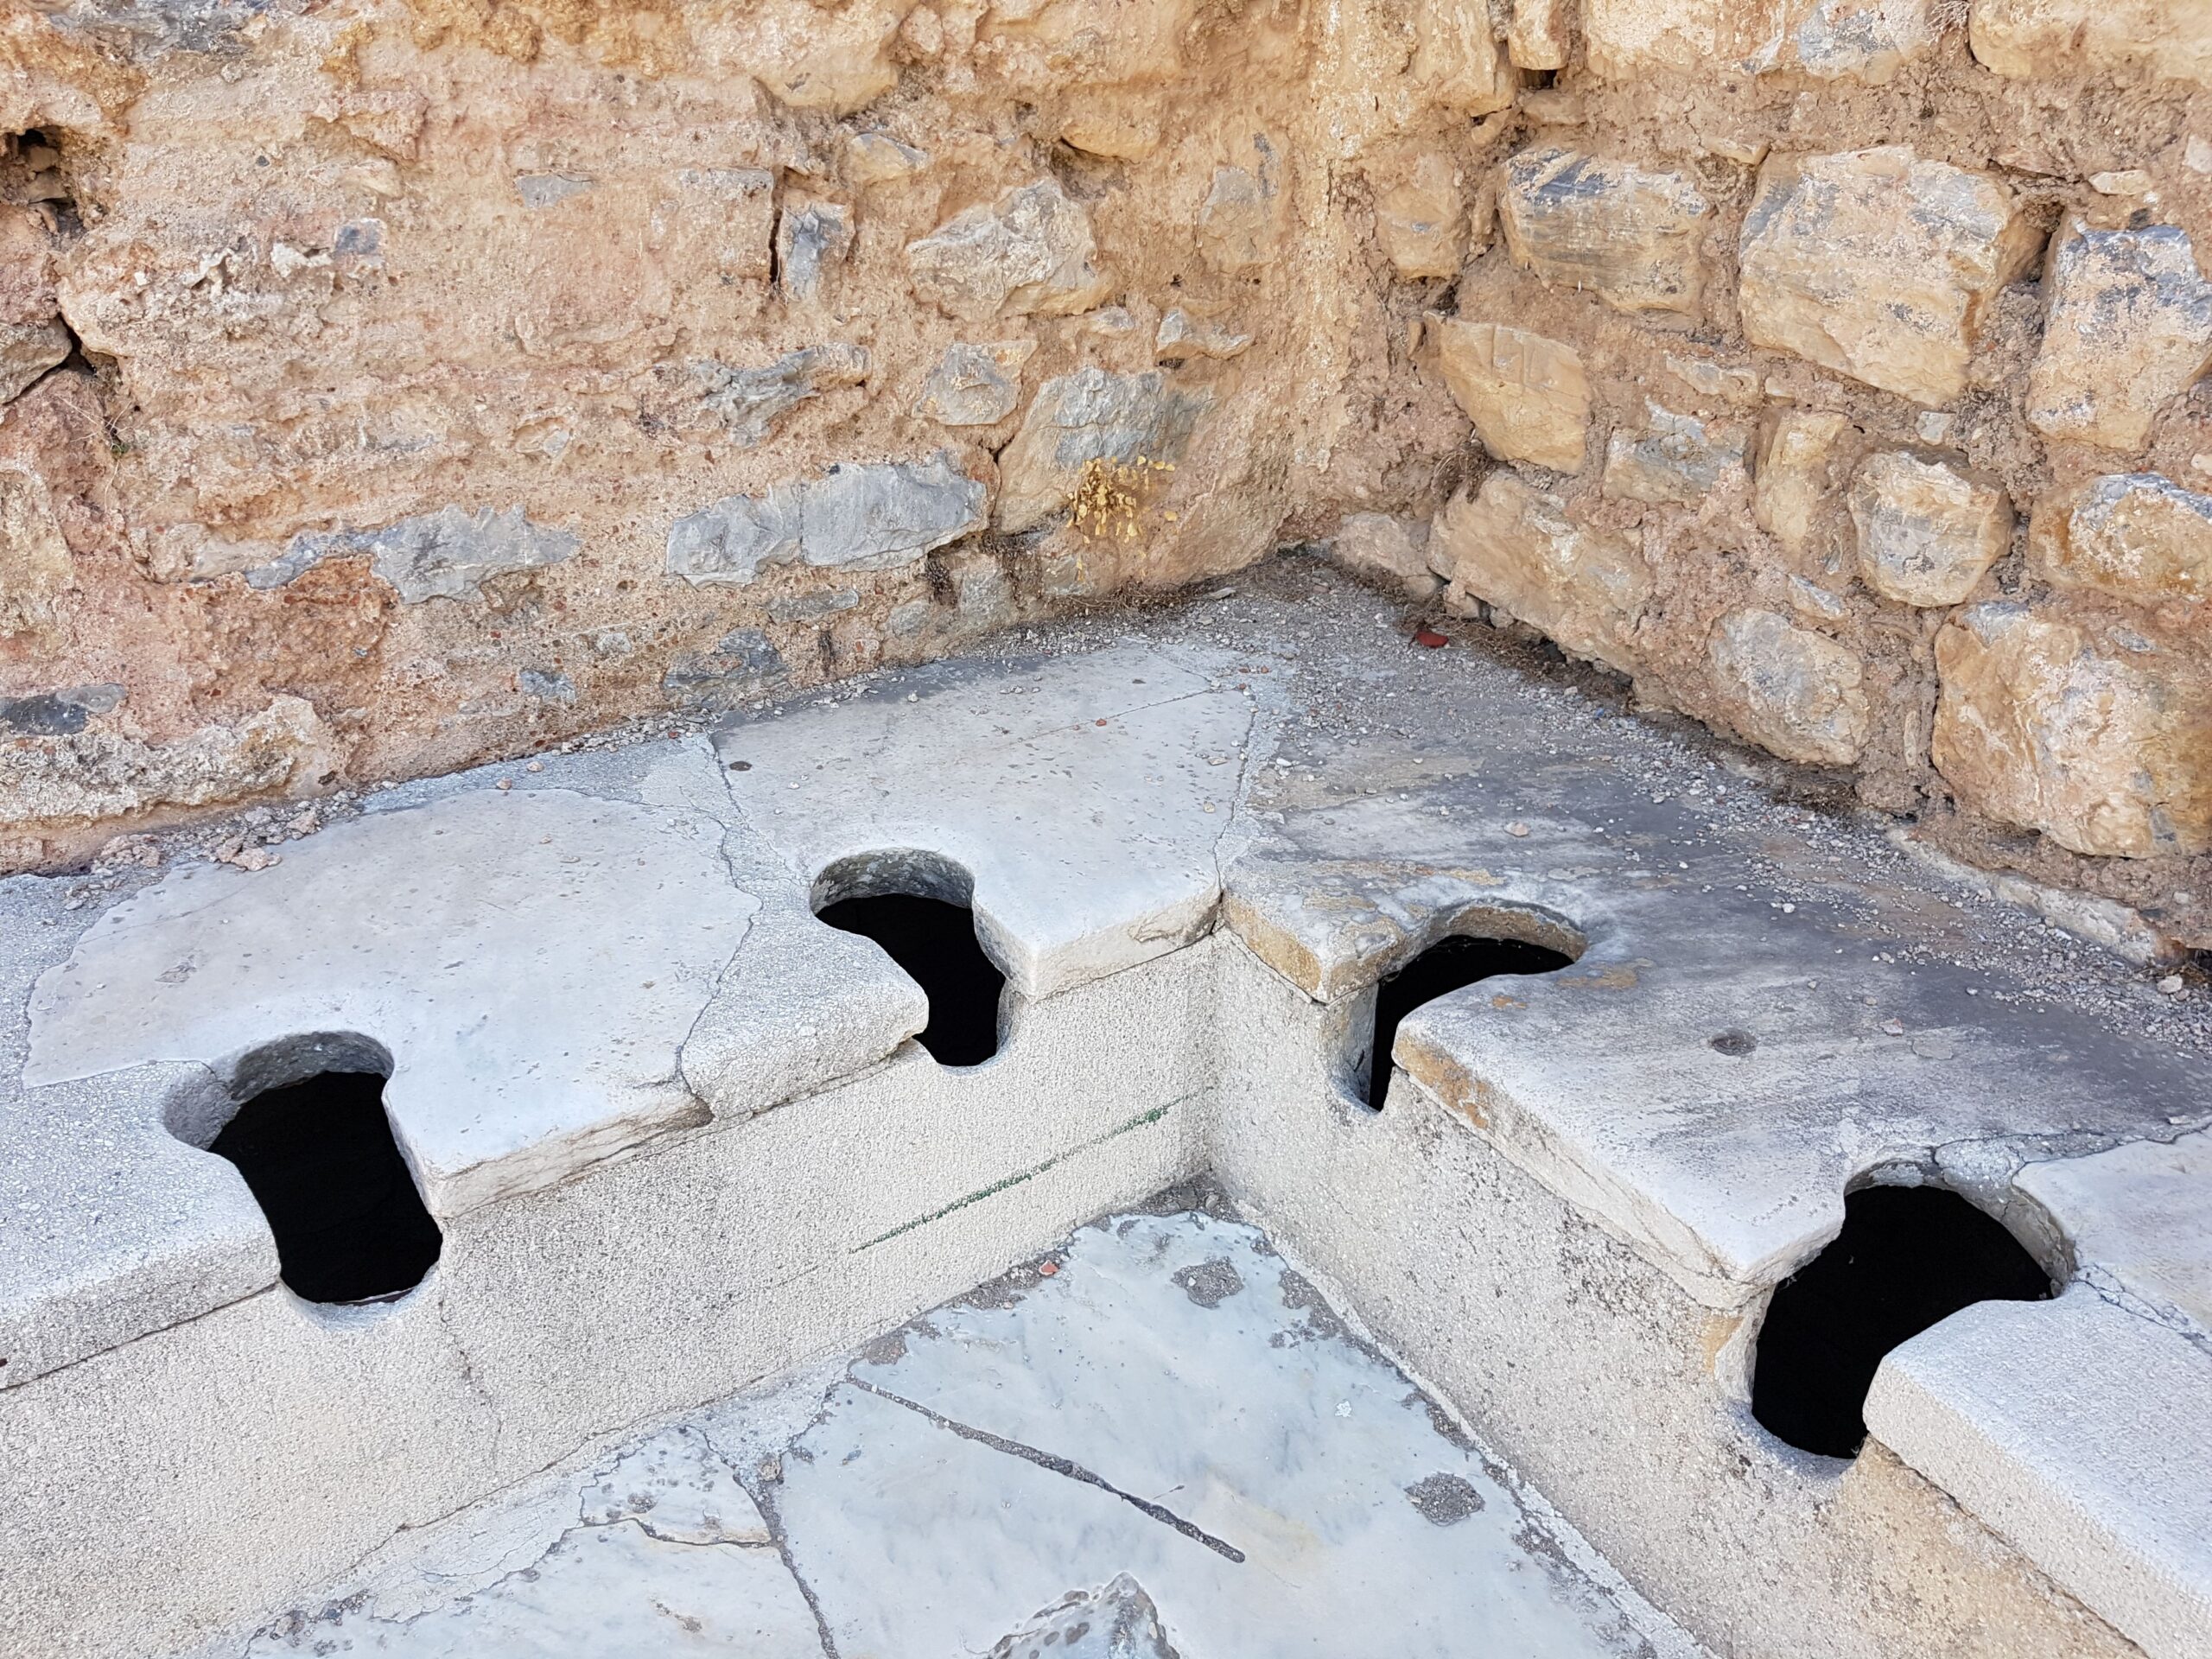 Göçebe Türklerde tuvalet tarihi dışında Anadoluda ilk tuvalet Aydında yapılmıştır.